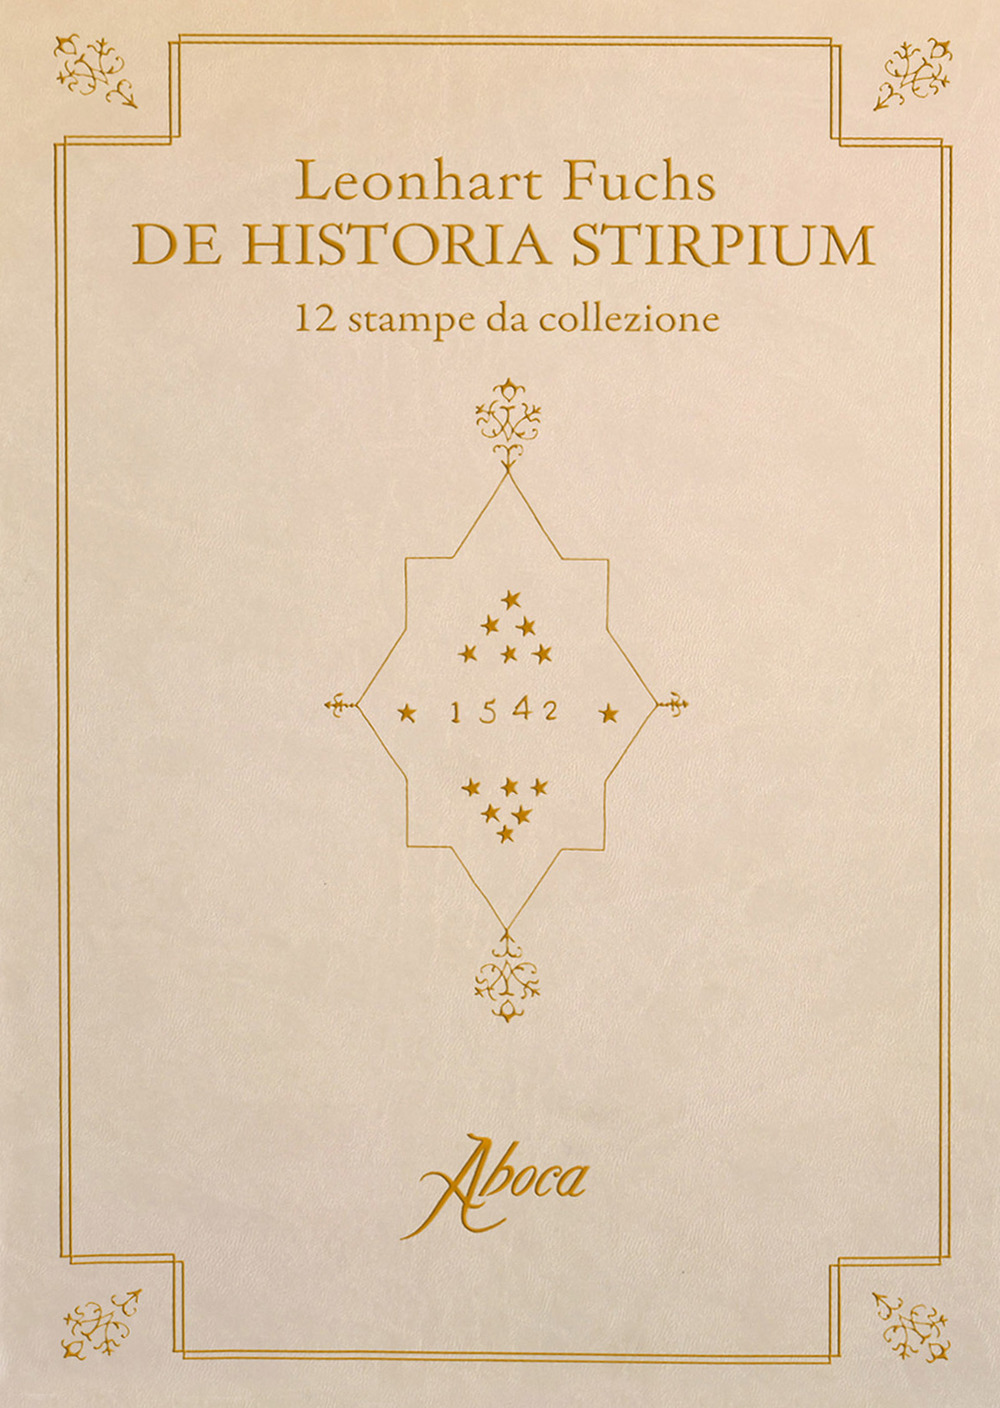 De historia stirpium. 12 stampe da collezione